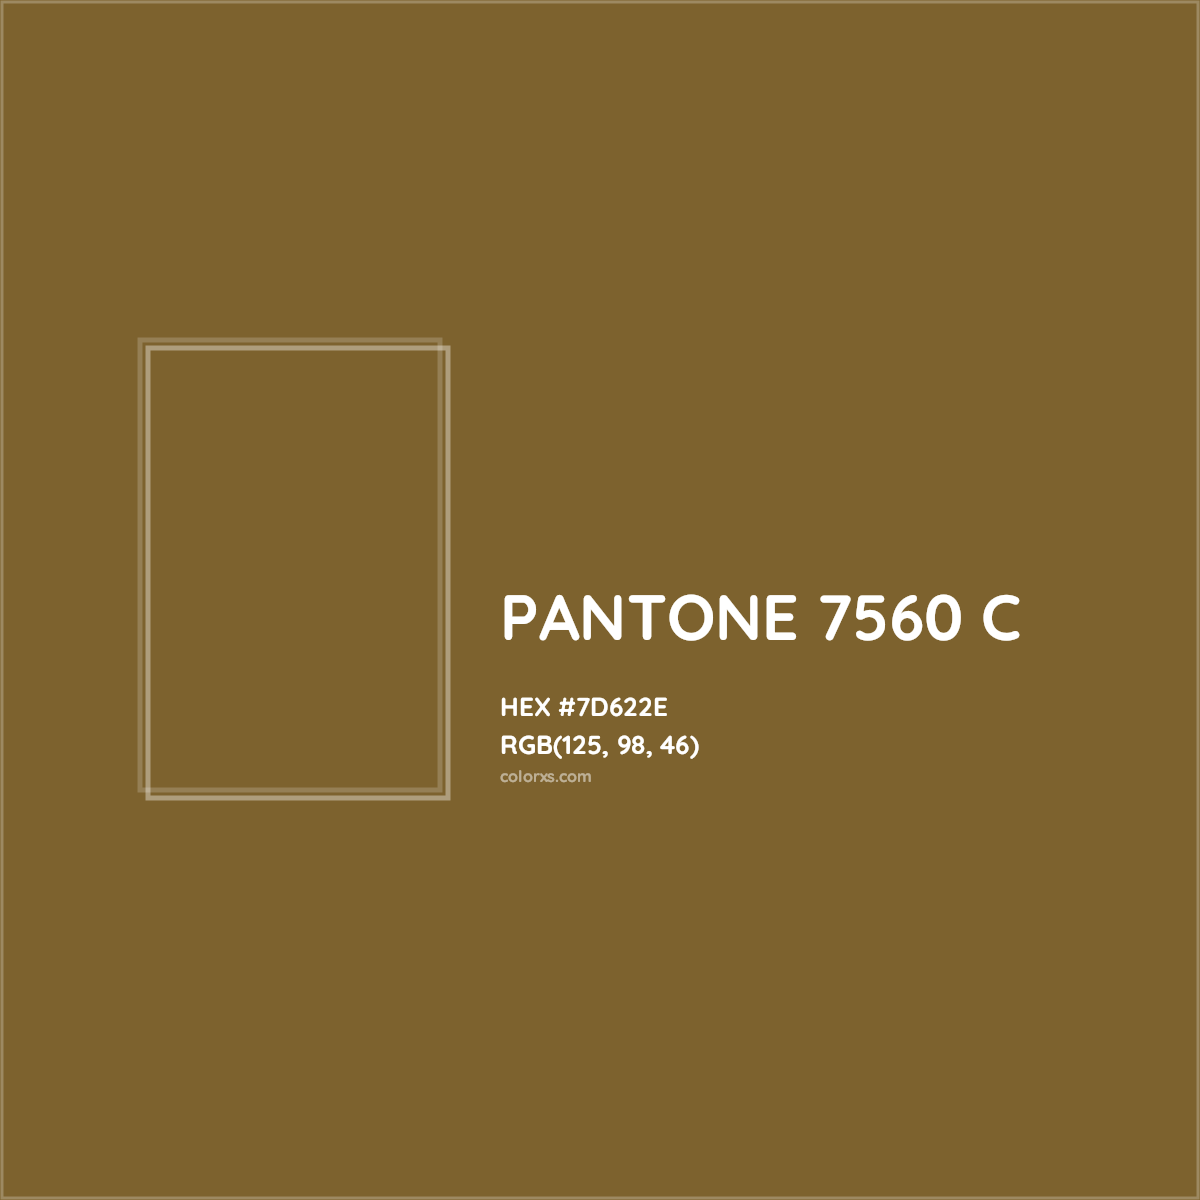 HEX #7D622E PANTONE 7560 C CMS Pantone PMS - Color Code